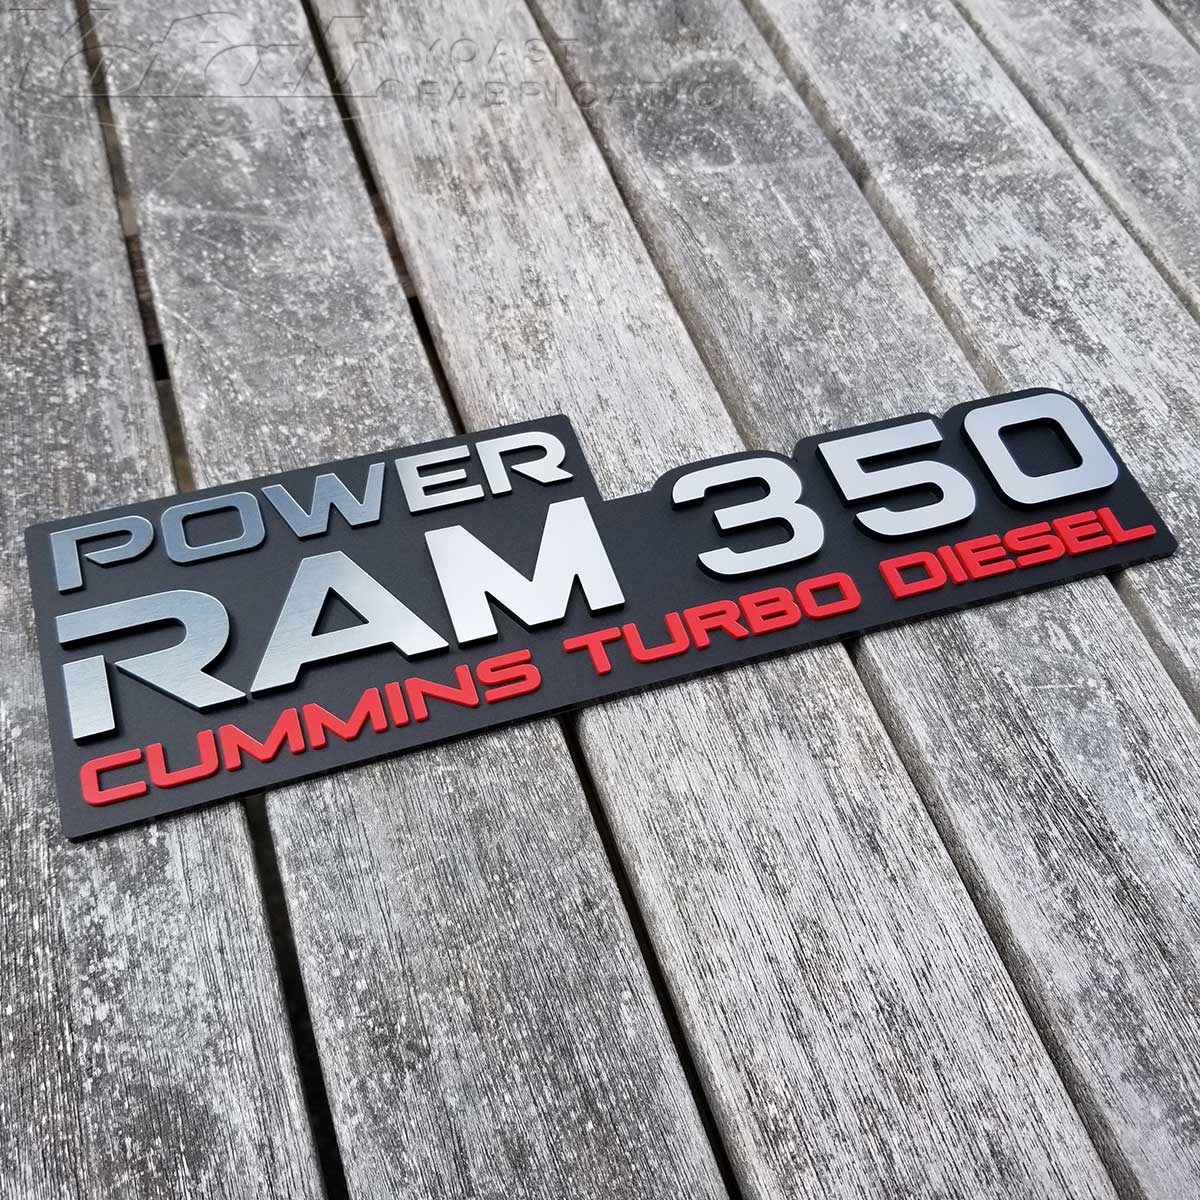 Power Ram 350 Turbo Diesel-Abzeichen